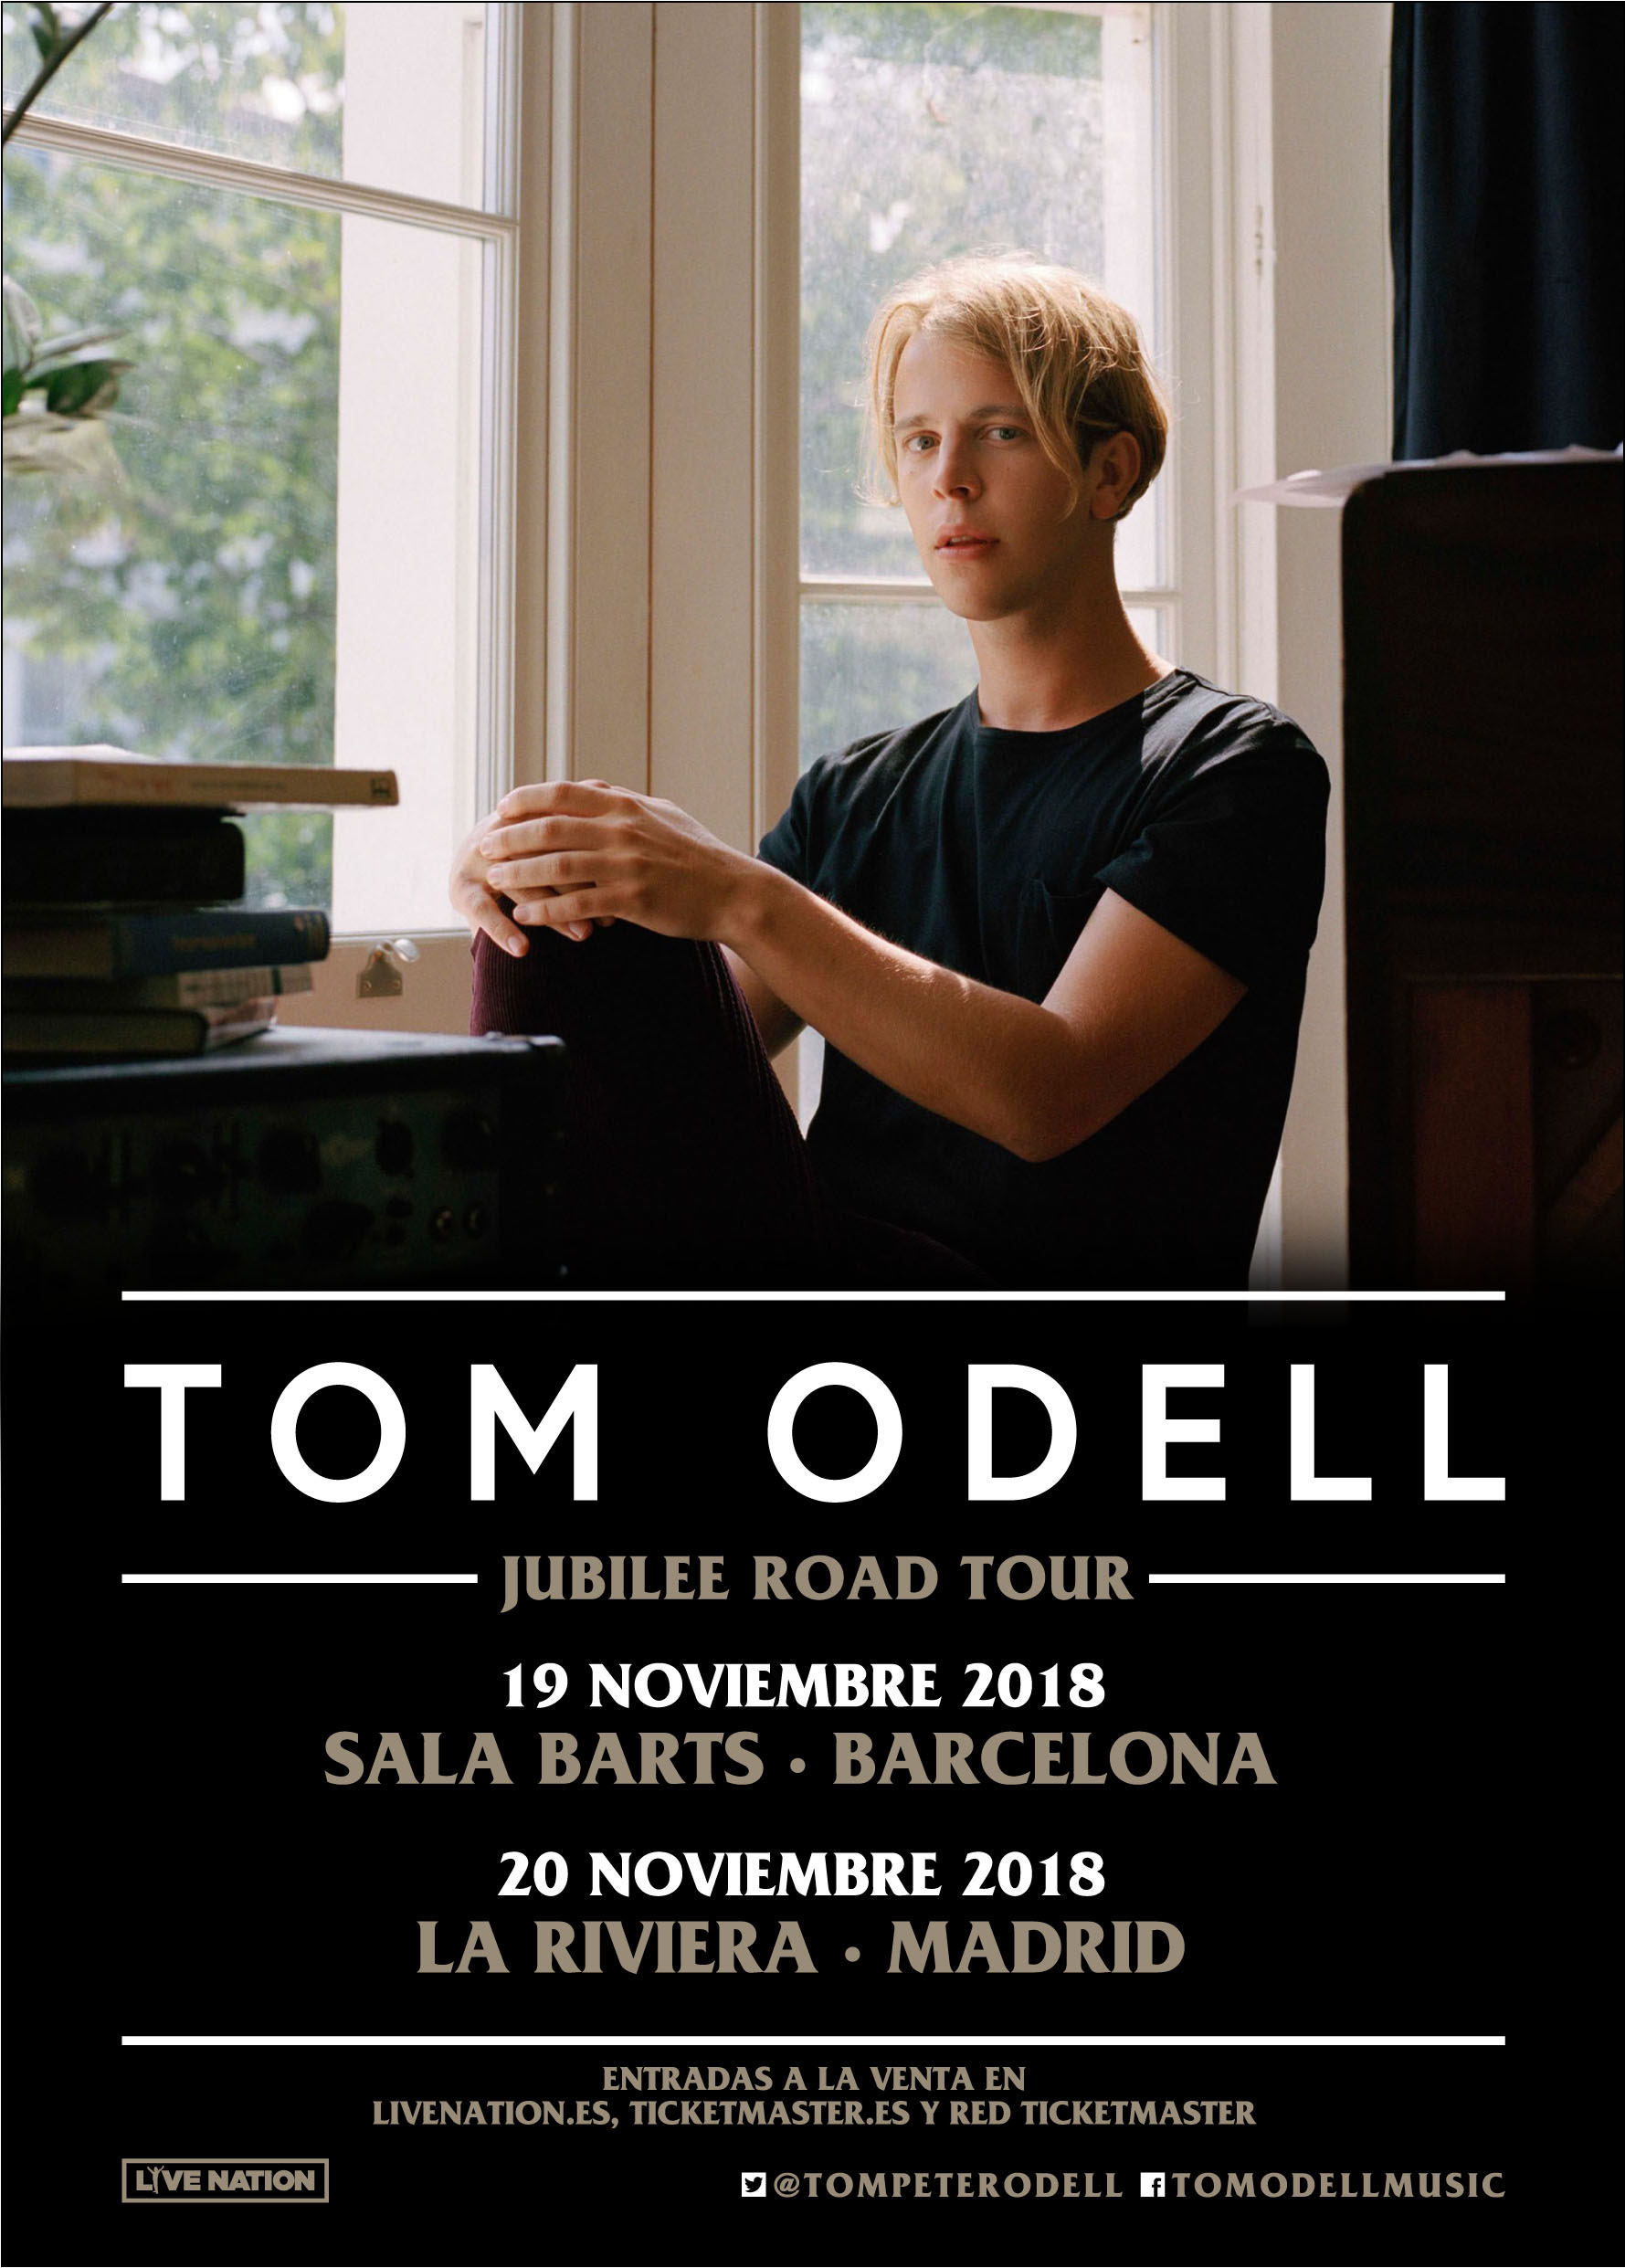 Tom Odell regresa a Barcelona y Madrid en noviembre con su Jubilee Road Tour